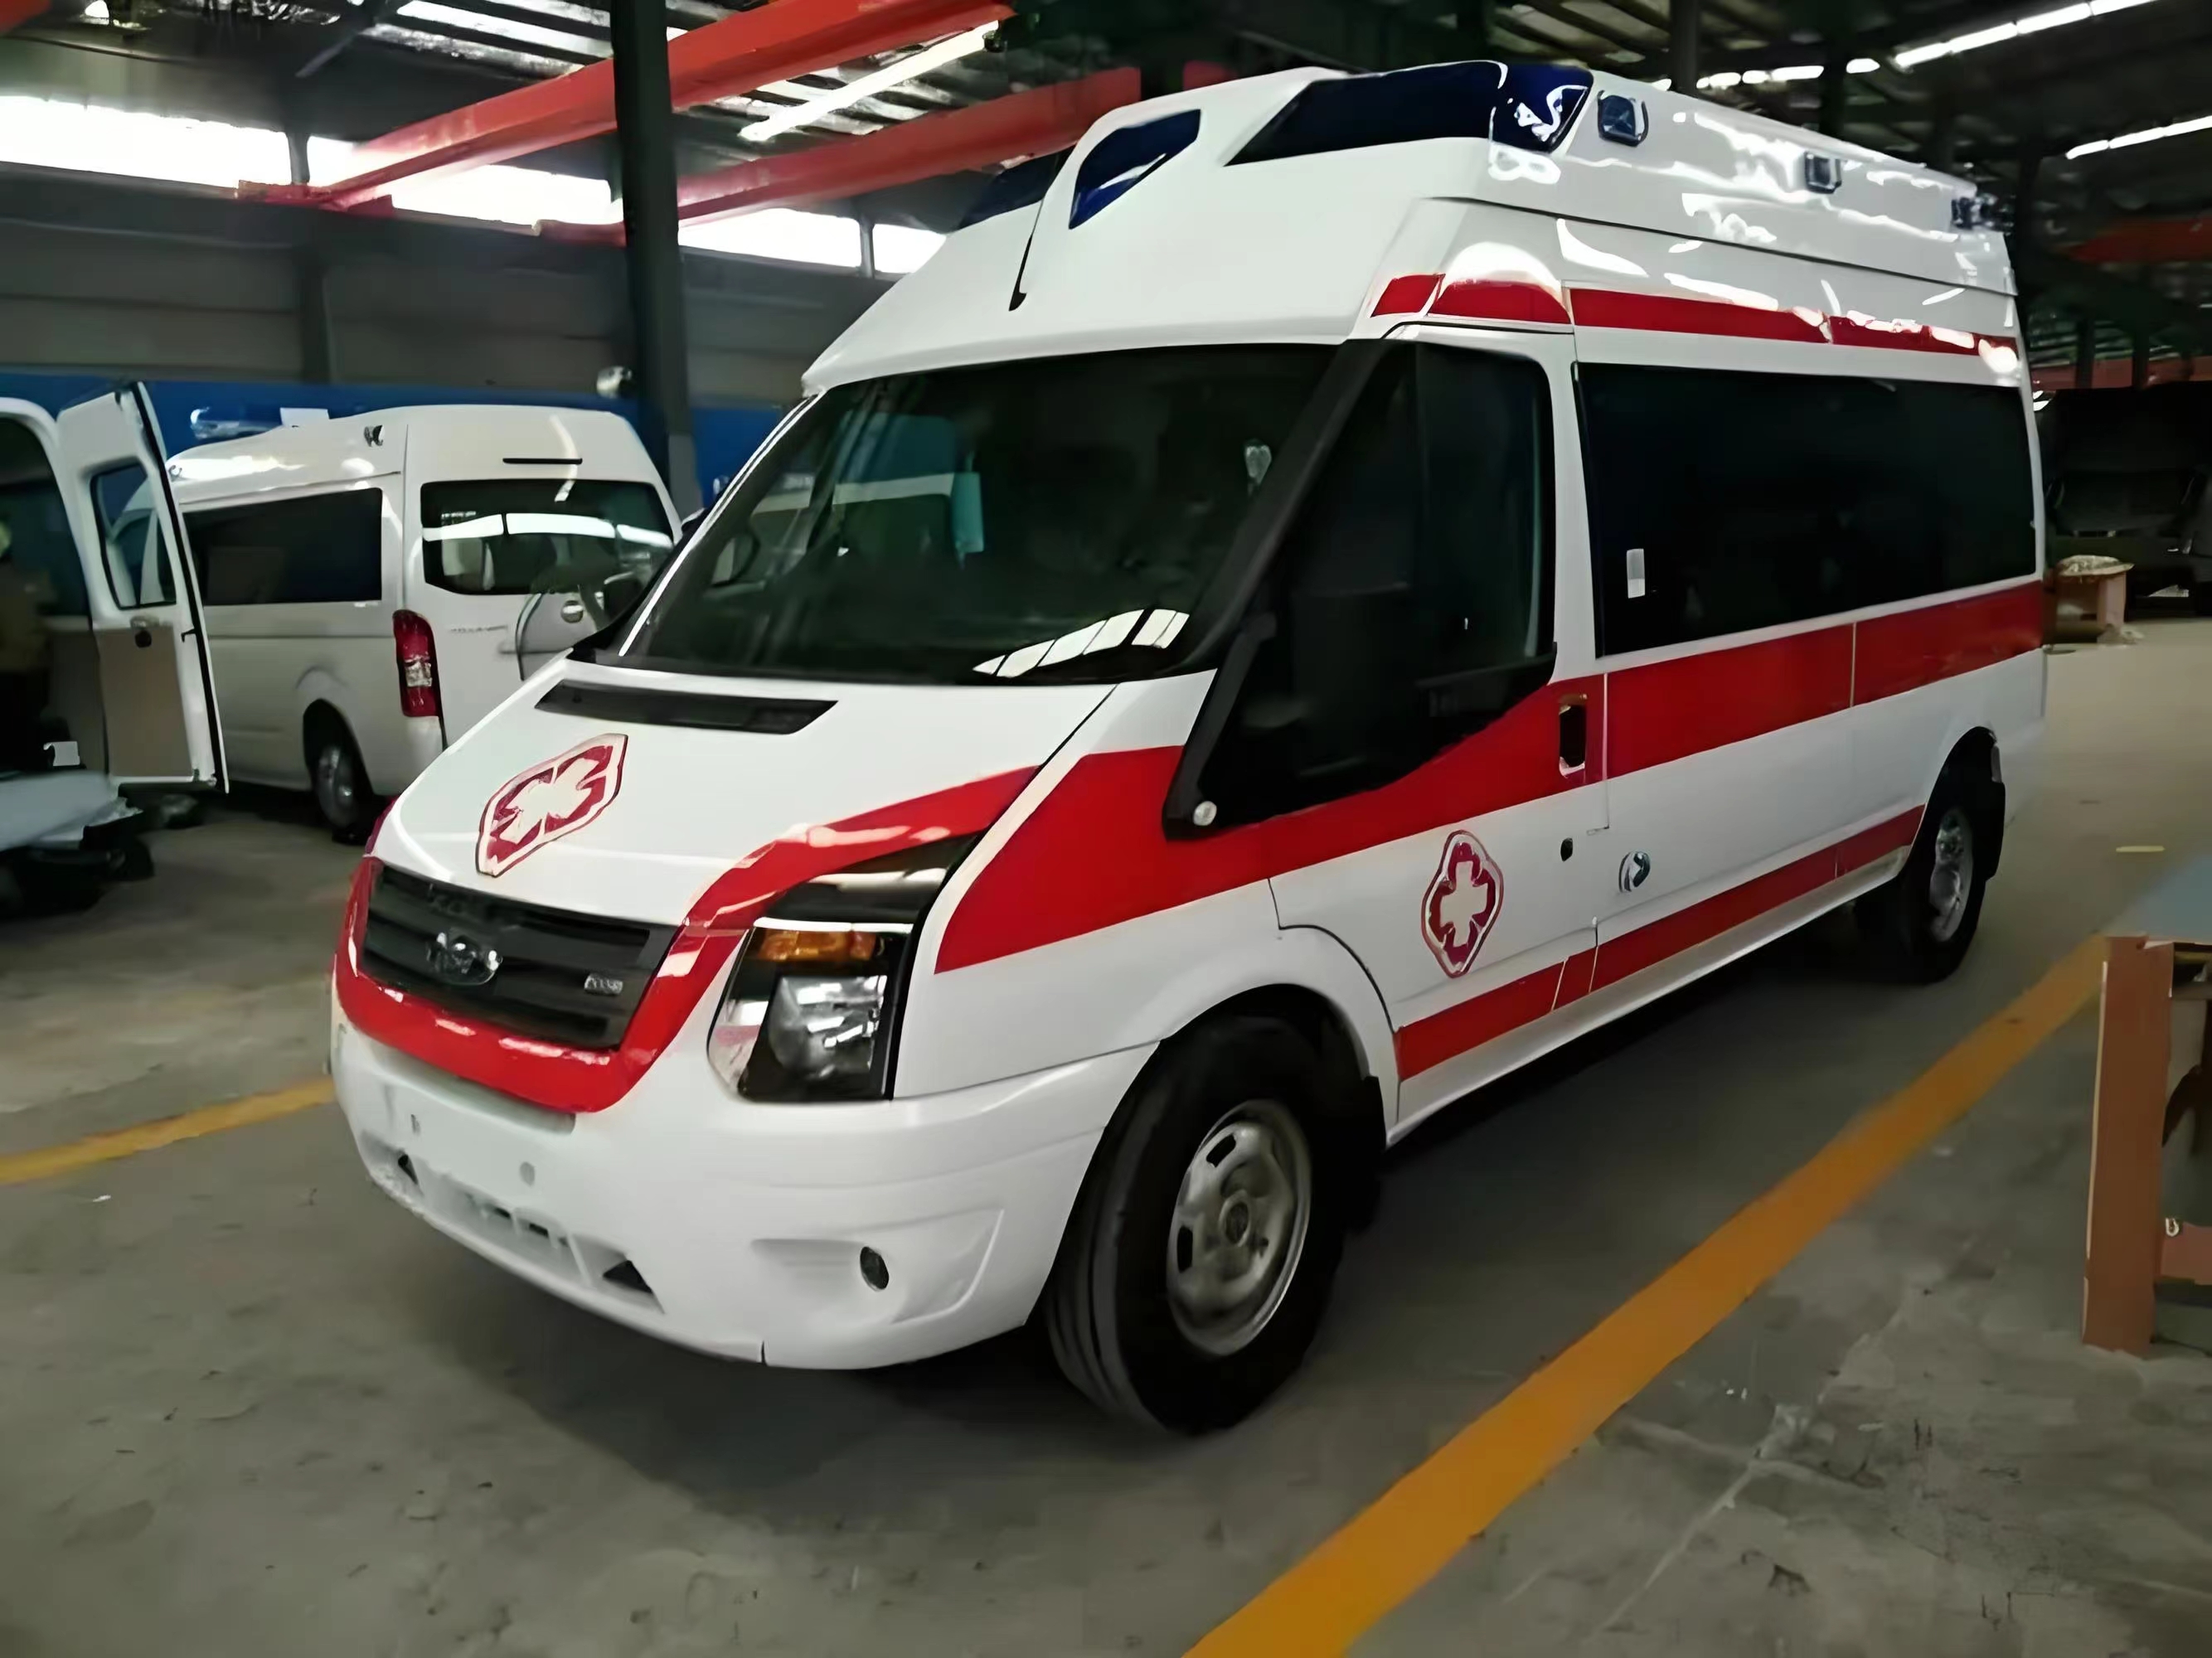 伊犁哈萨克跨省救护车出租护送病人转院